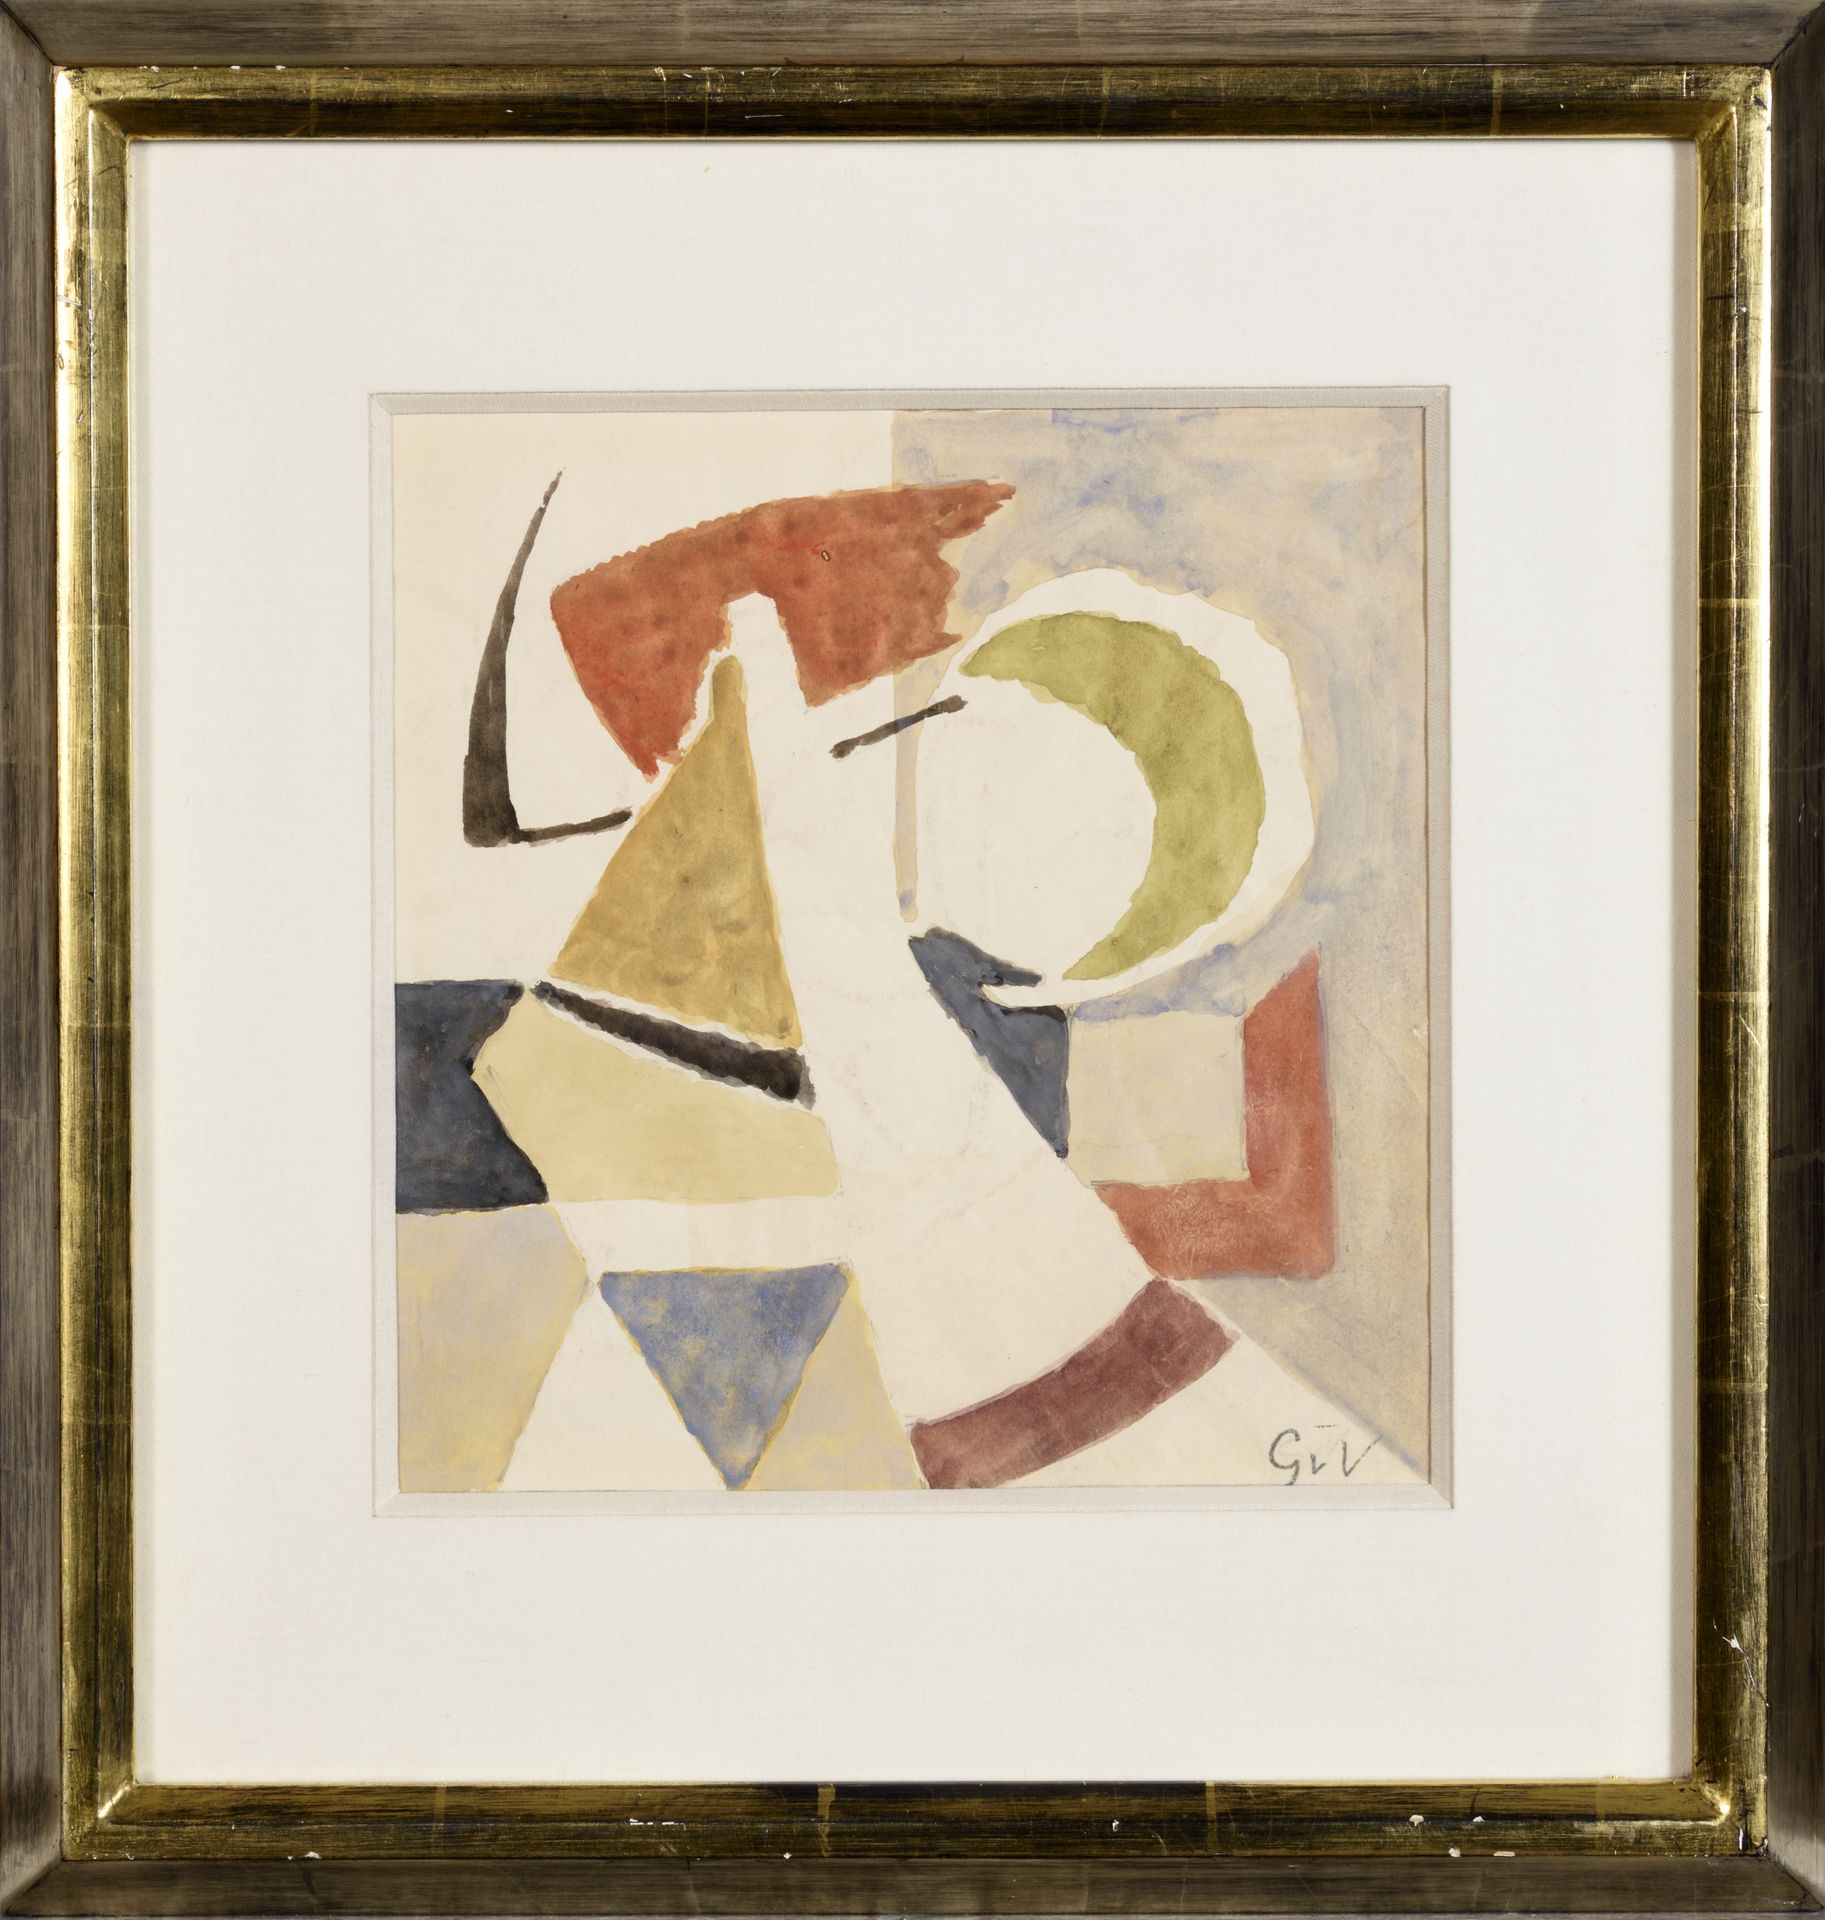 GEER VAN-VELDE (1898-1977) 格尔-范-维德(1898-1977)

无名氏

纸上水彩画，右下角有字。

21 x 20厘米